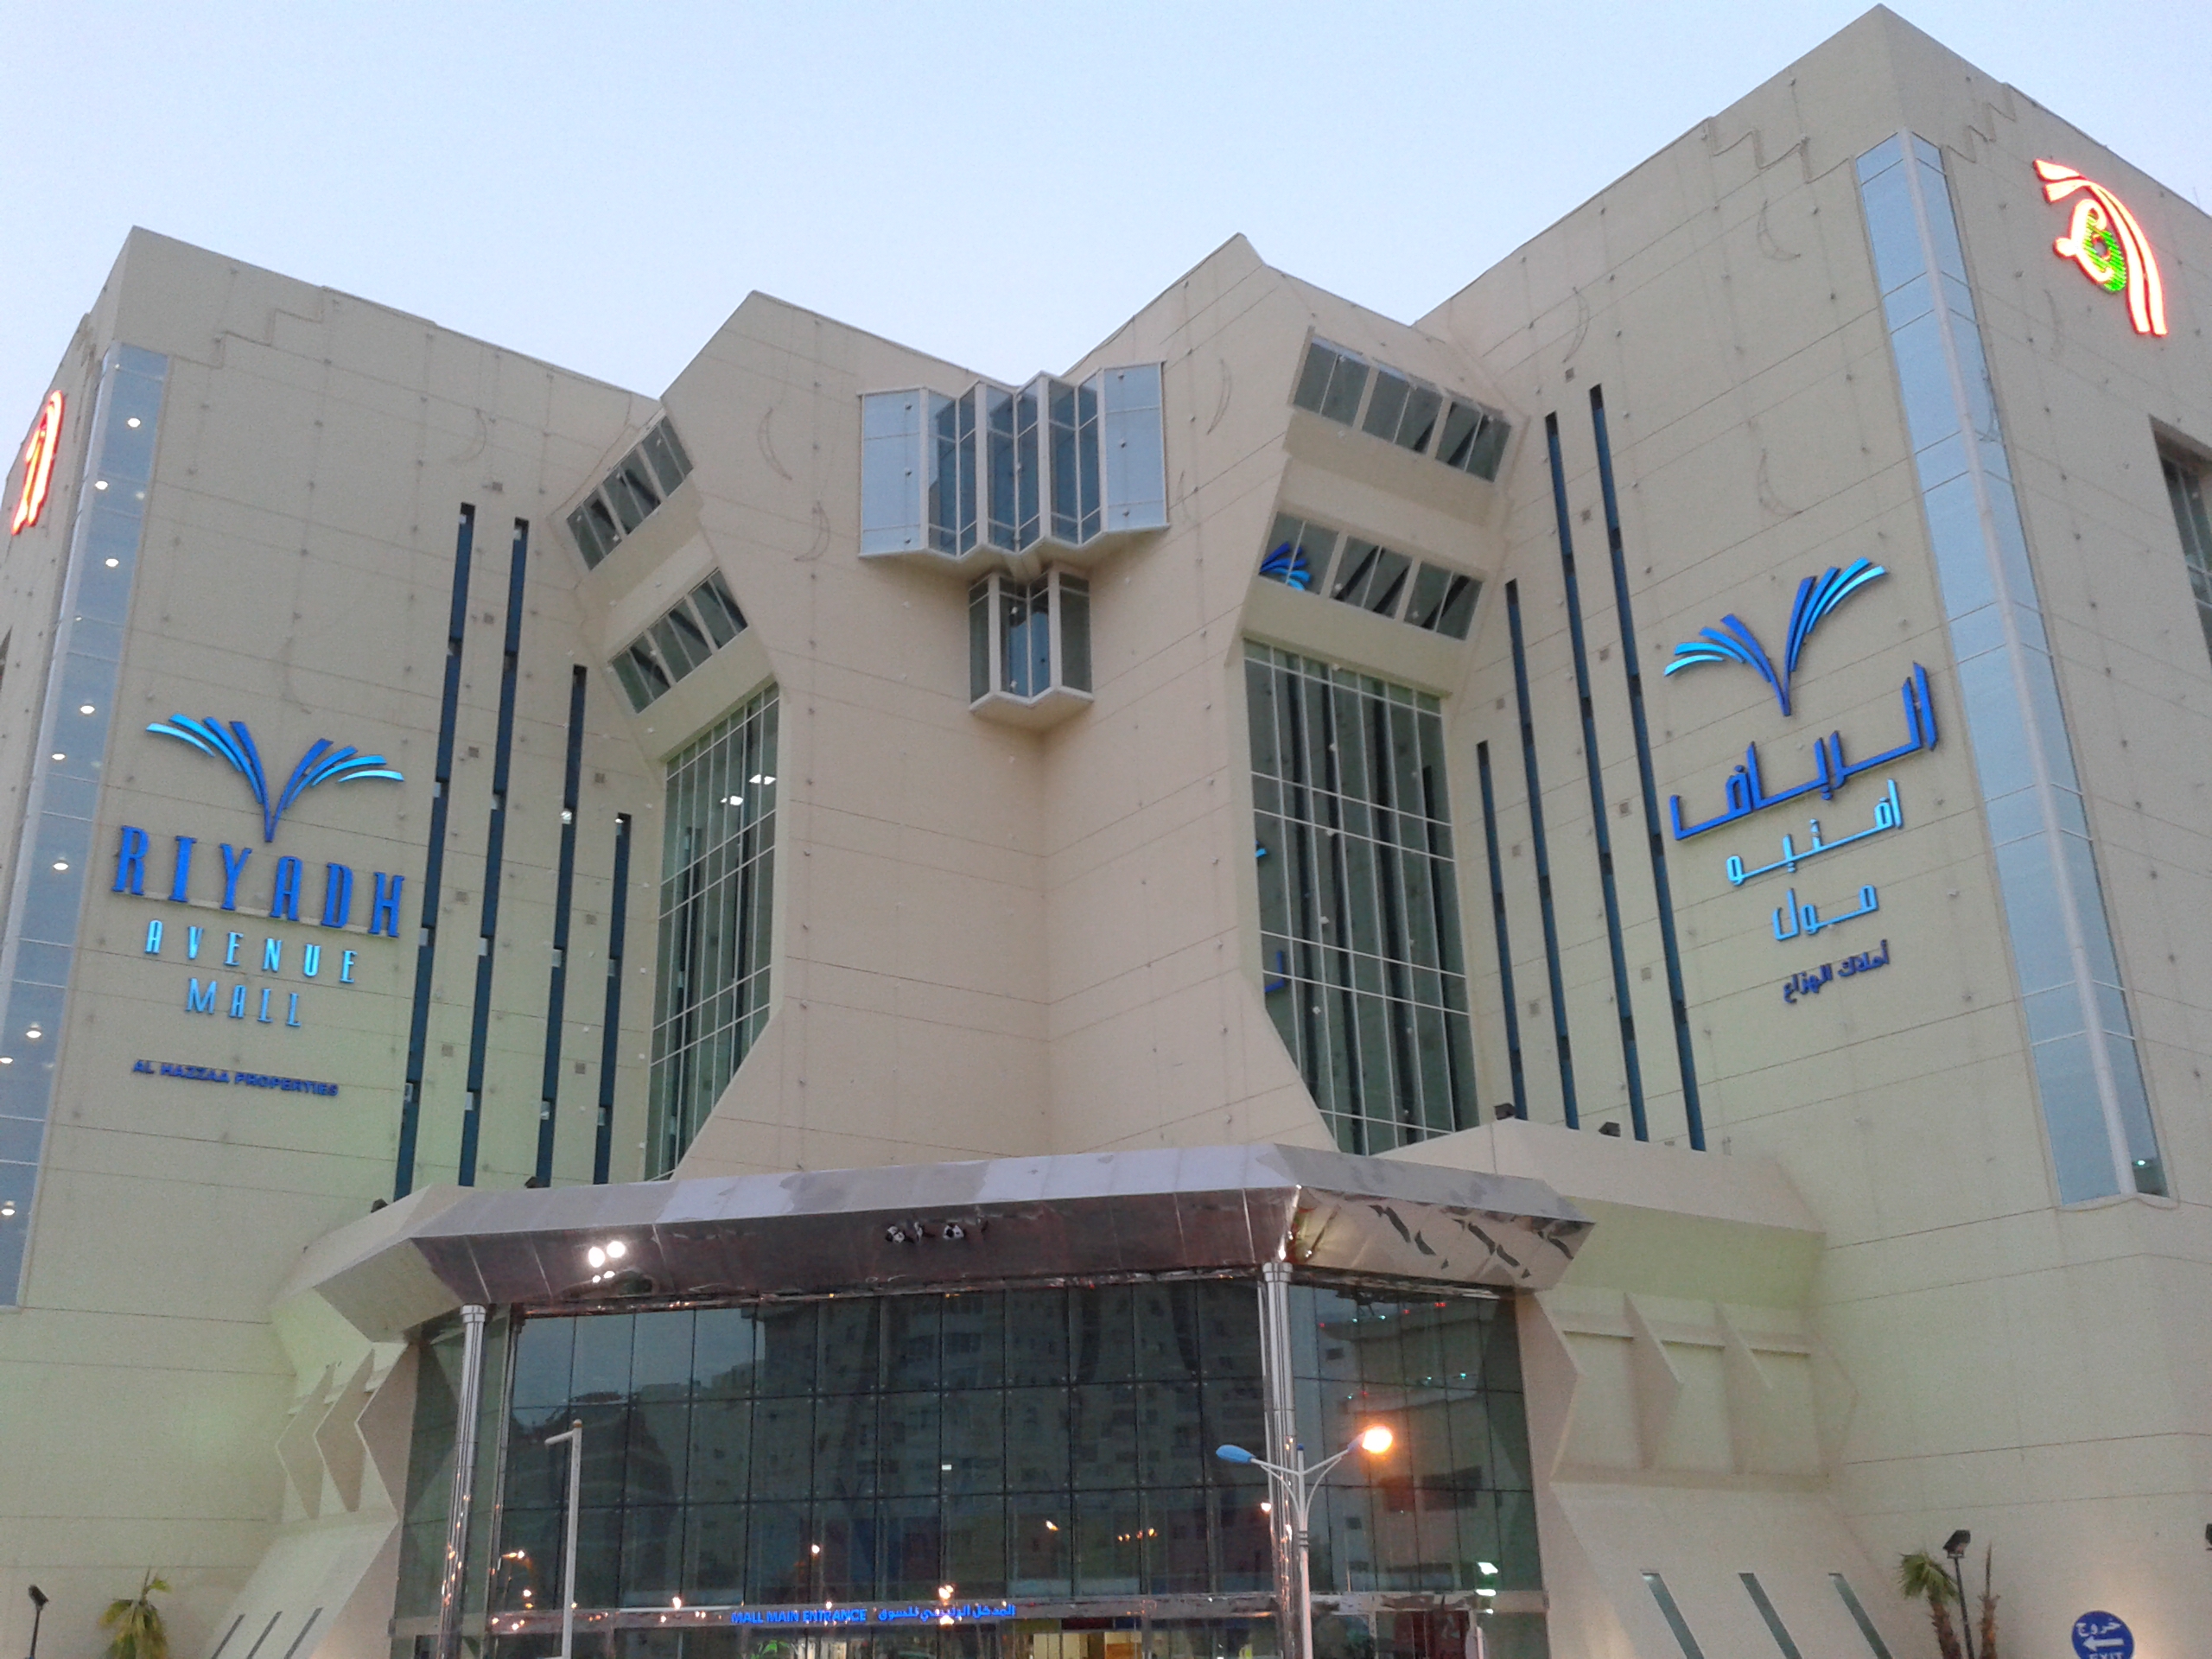 Riyadh avenue mall